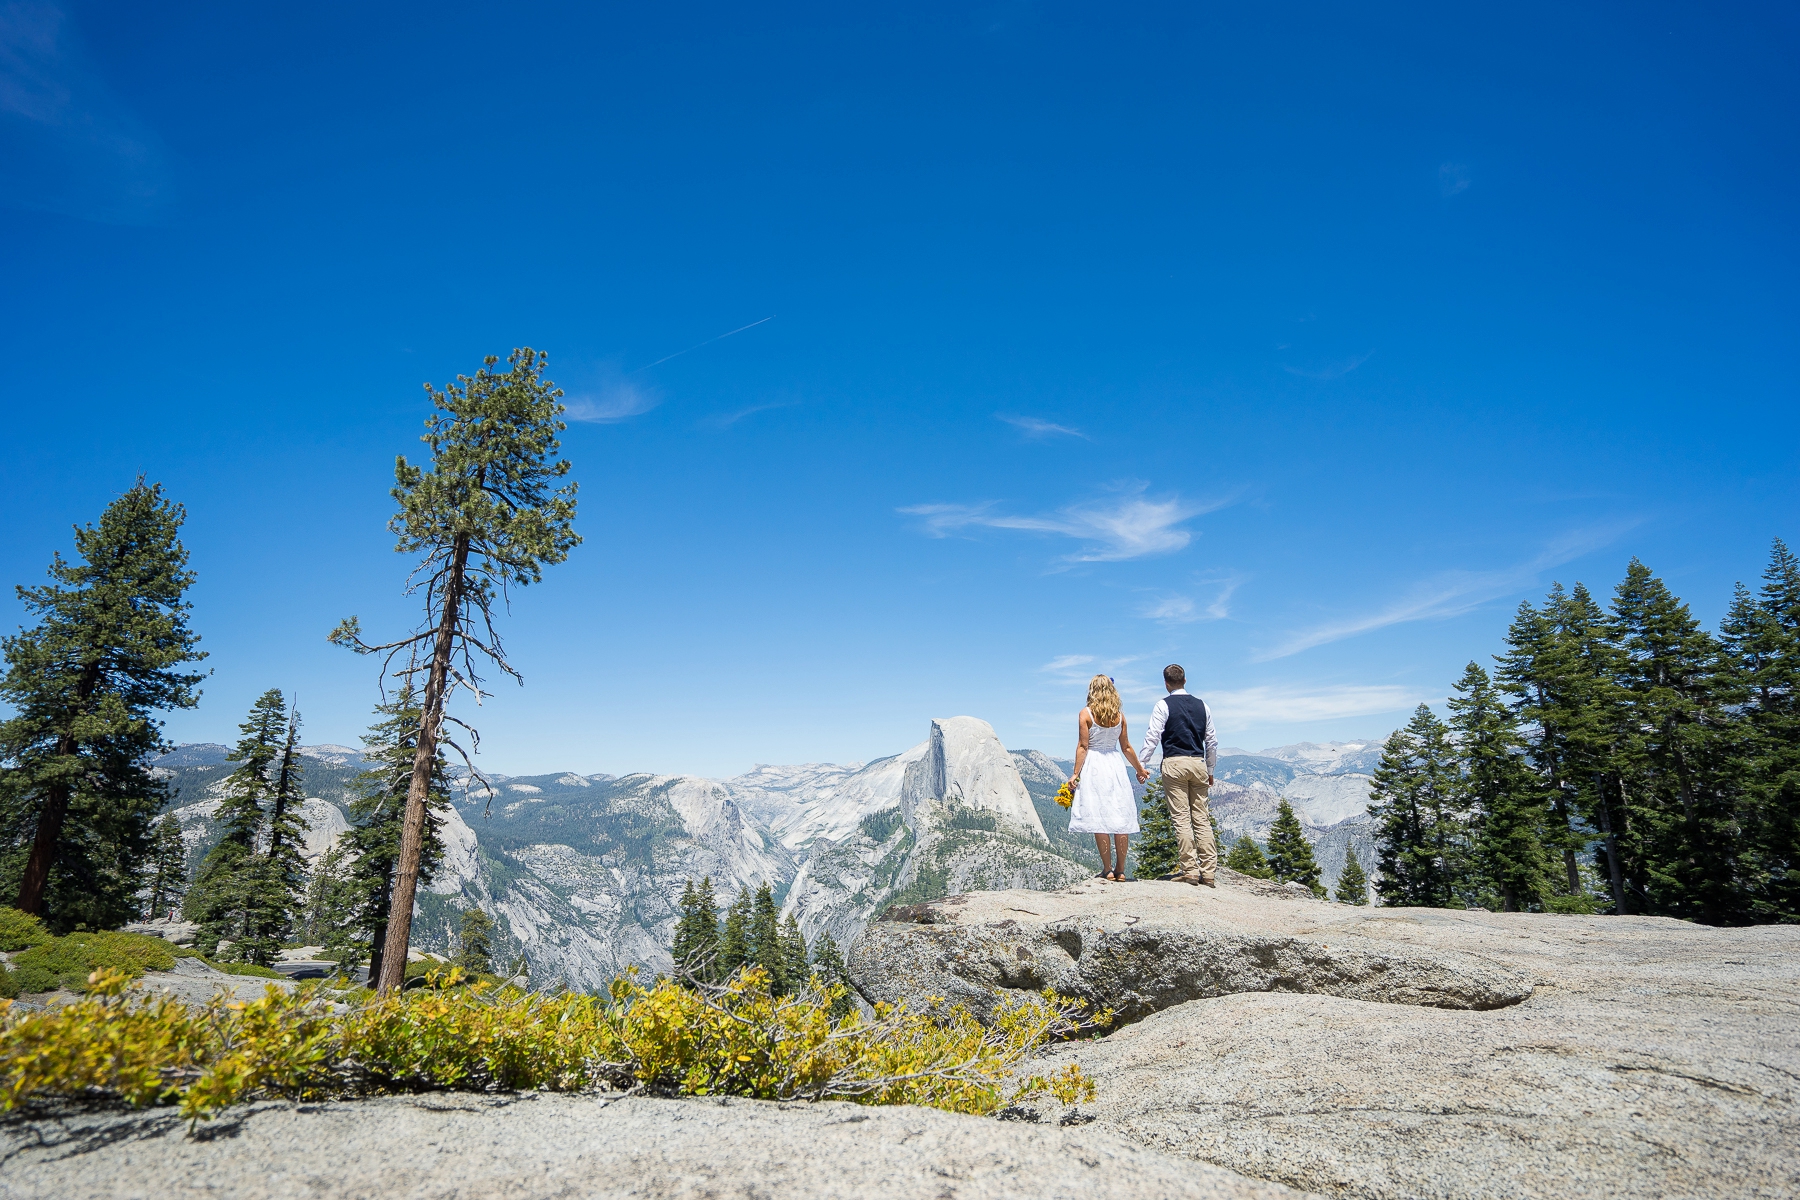 Wedding Photography Tips for Mountain Weddings